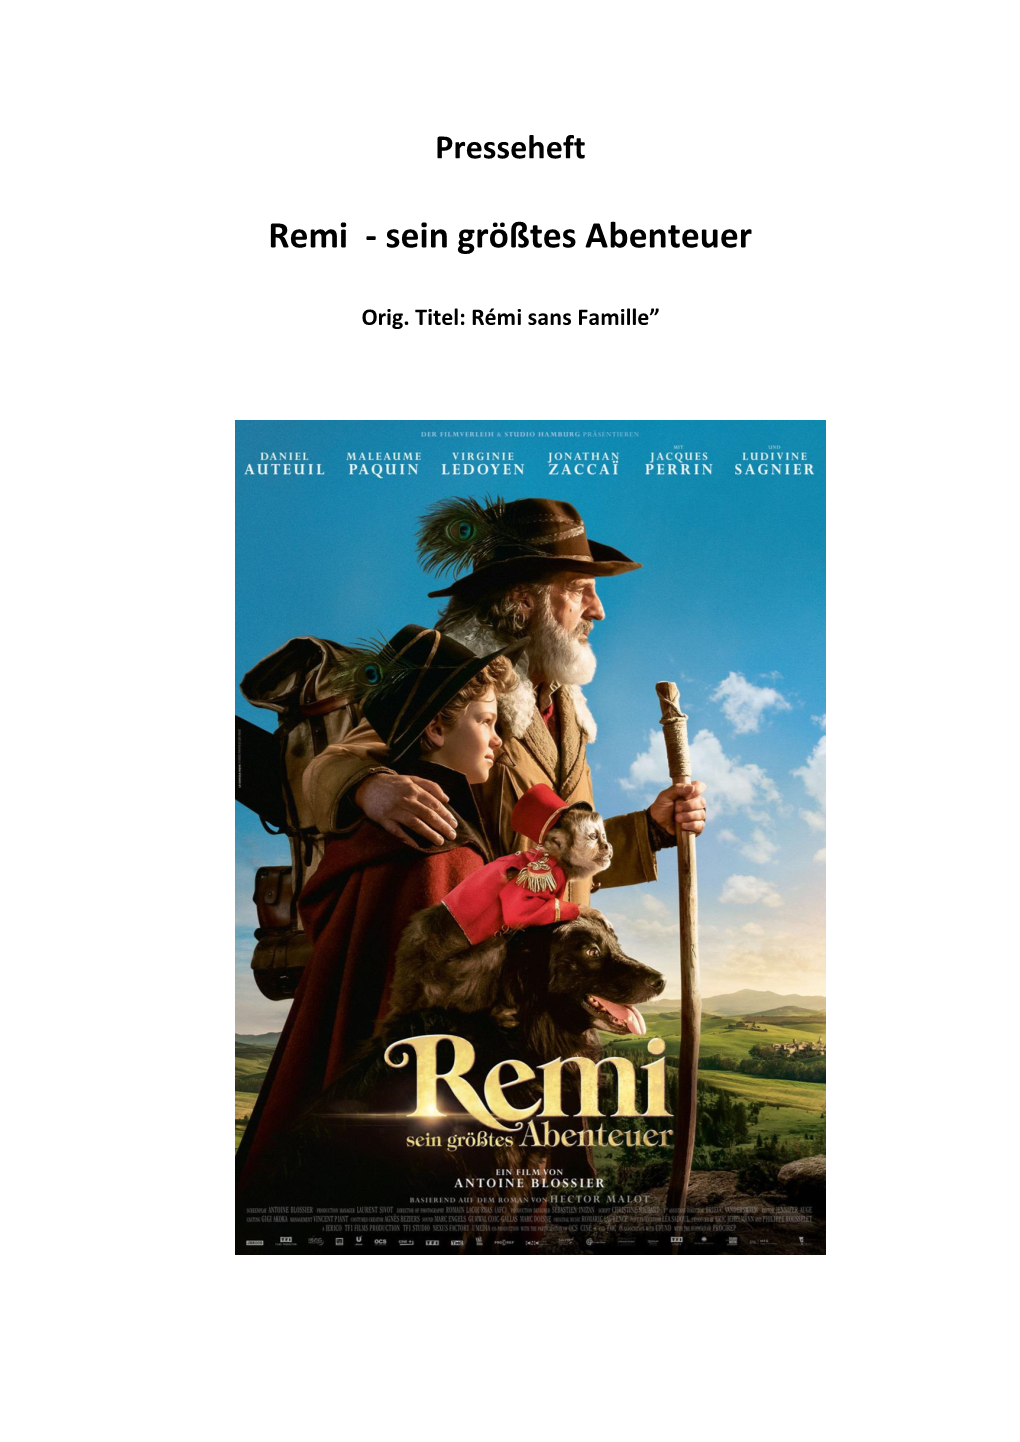 REMI – Der Film – Demnächst Im Kino